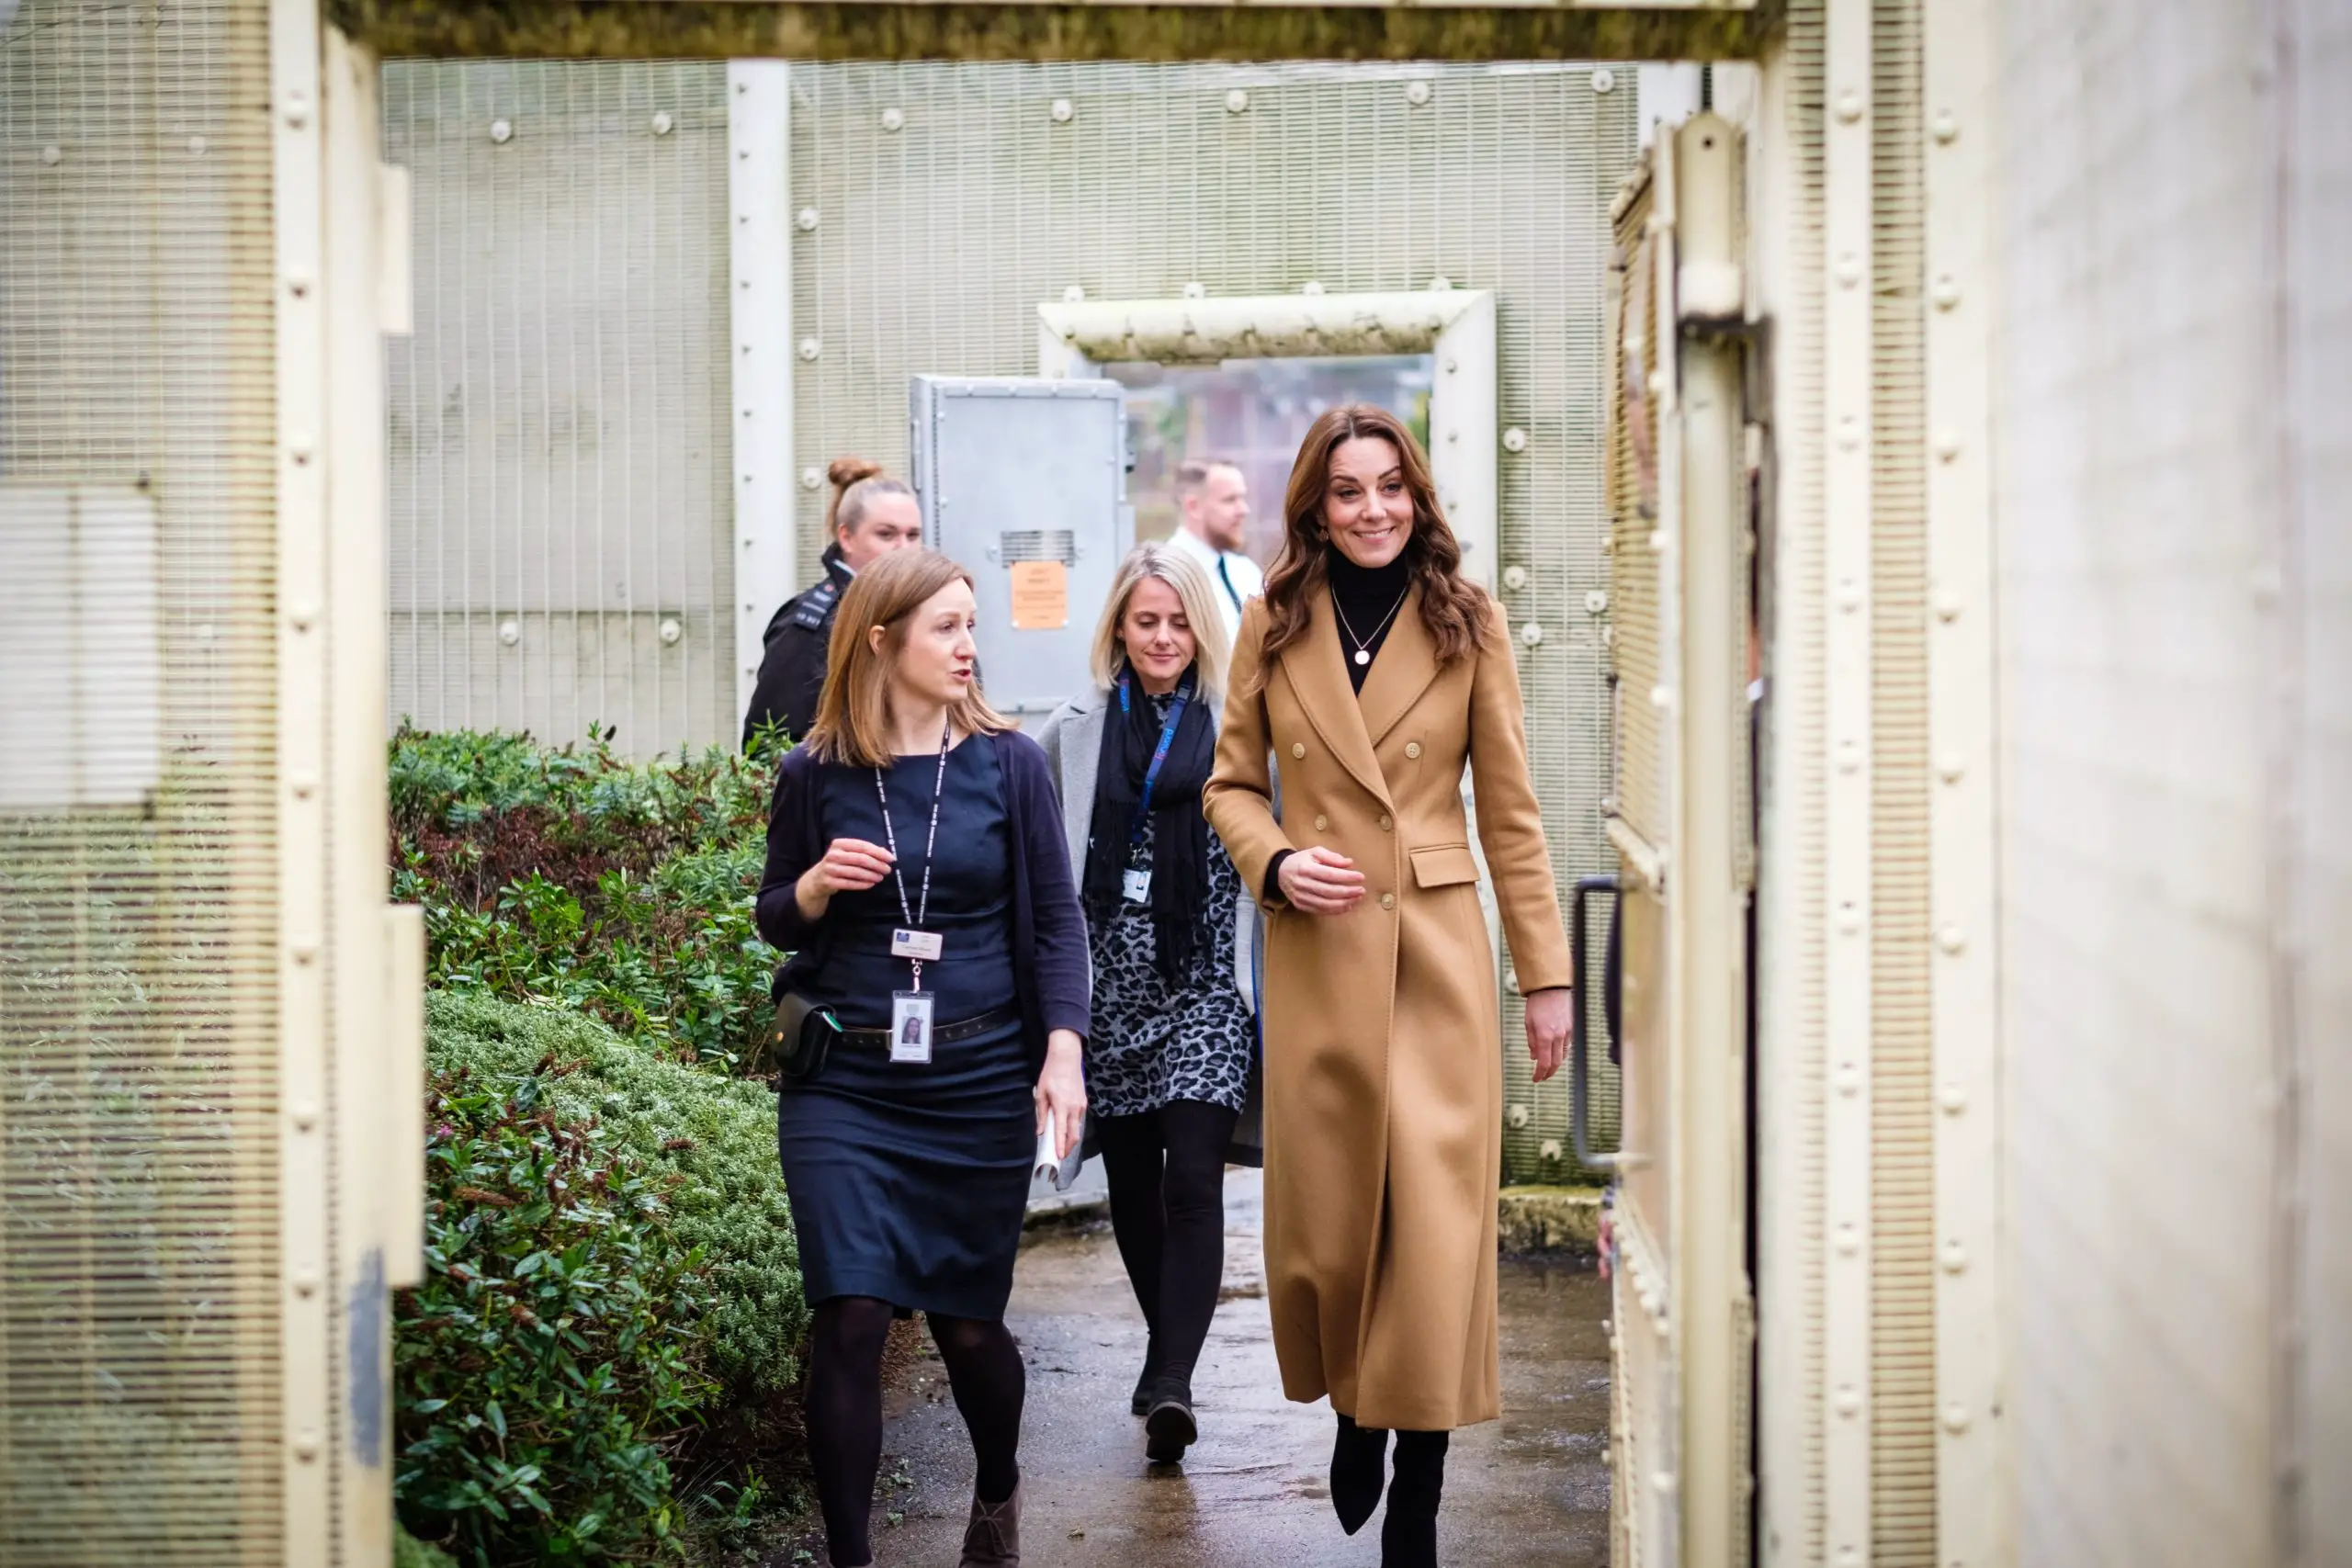 Duchess of Cambridge visited HM Surrey Prison to launch landmark survey